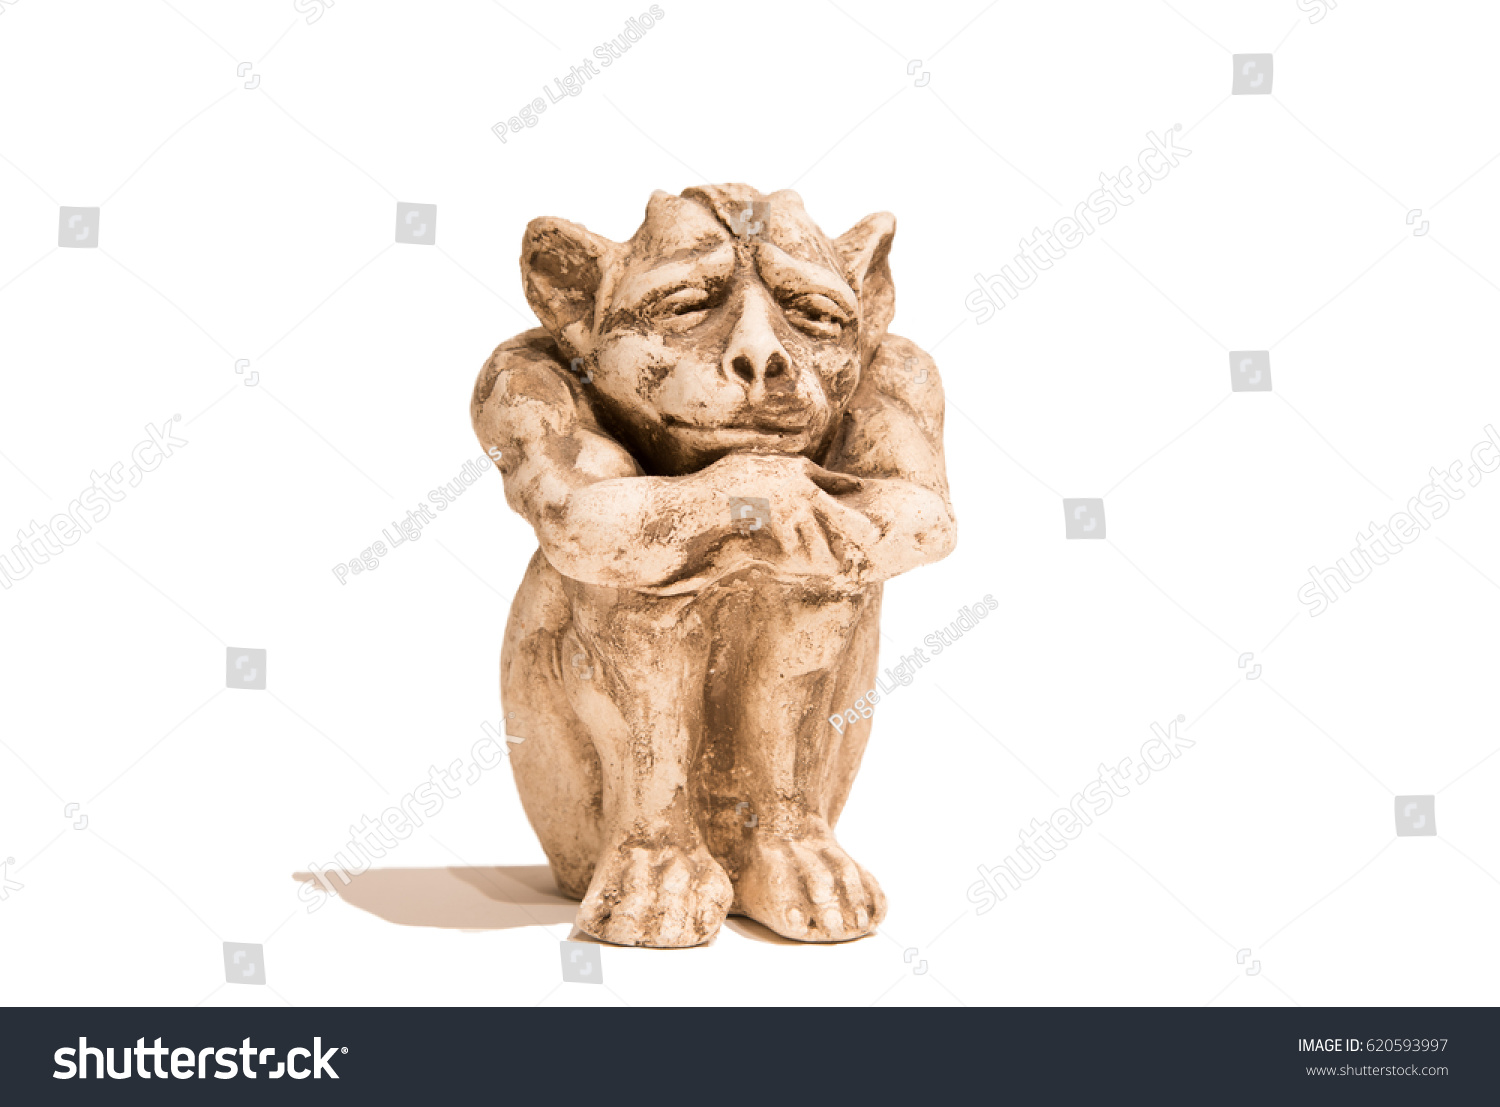 Isolated sitting gargoyle figurine on white background. With shadow. #620593997